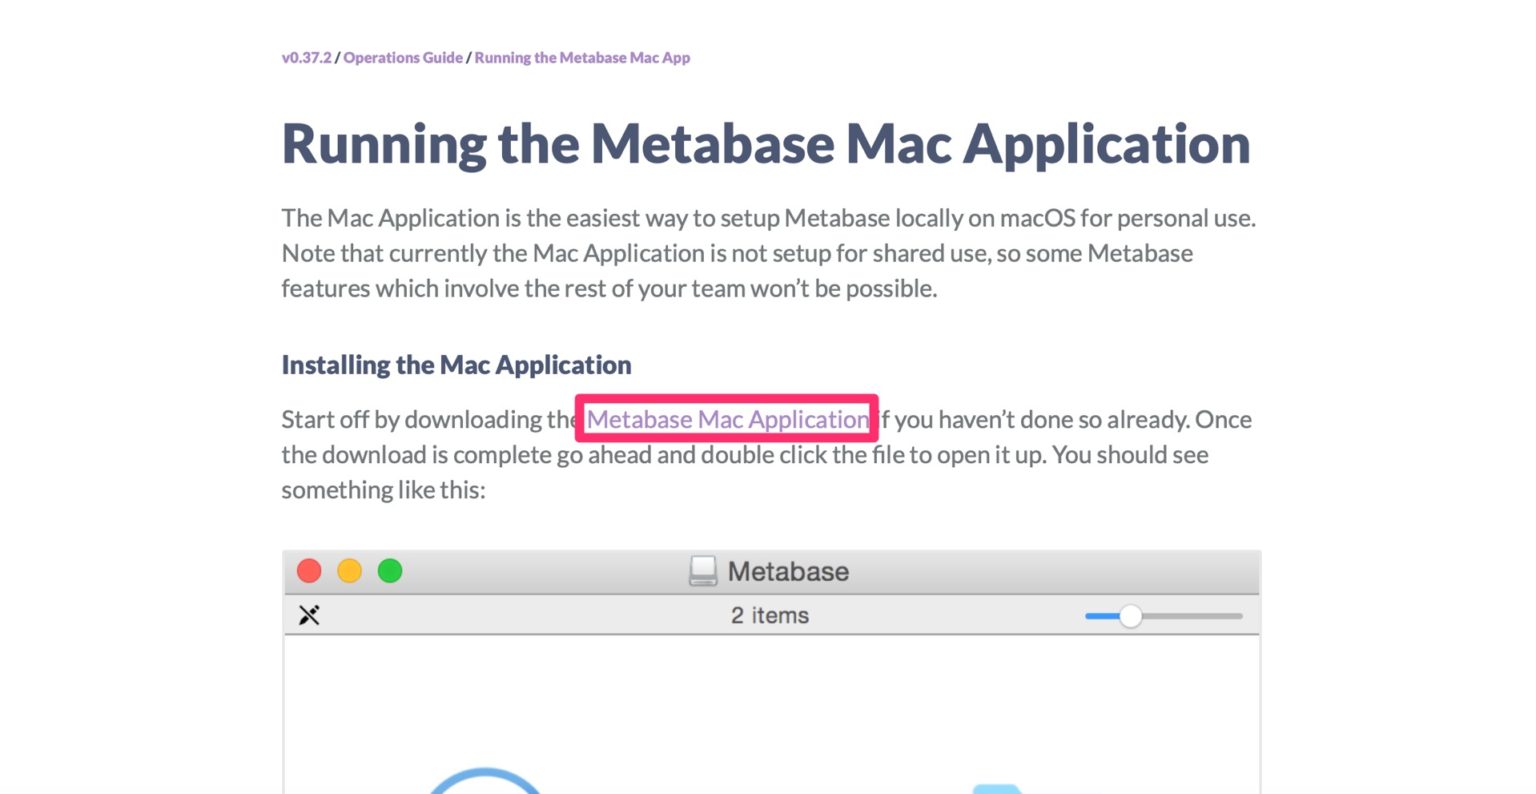 metabase app v metabase online